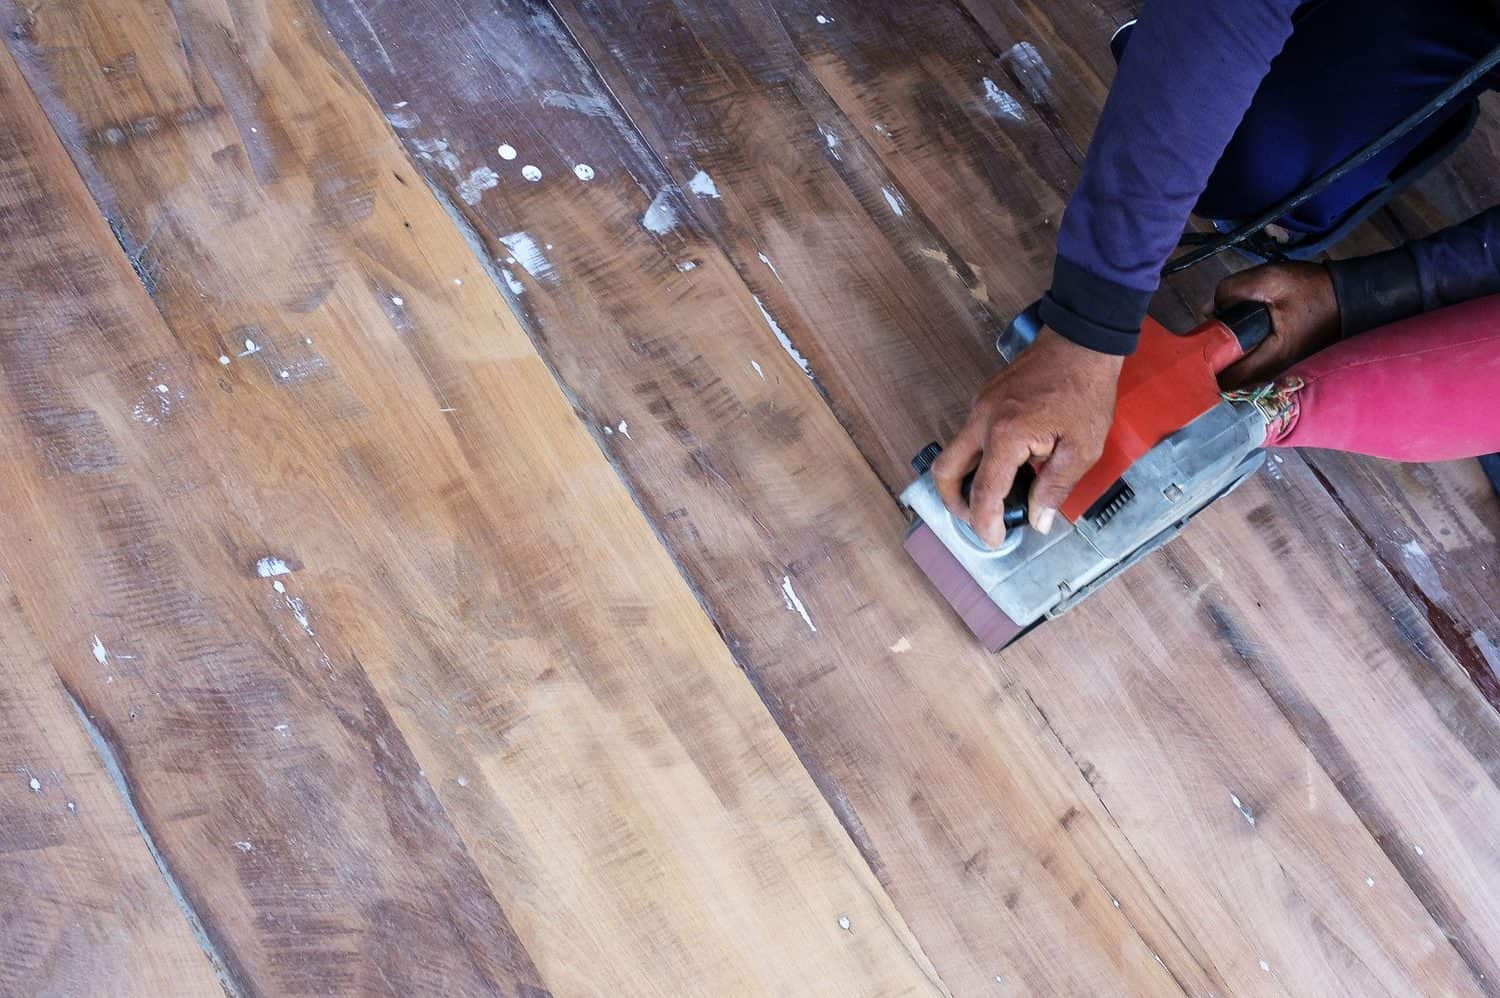 How To Bleach Hardwood Floors, Bleach On Laminate Floors